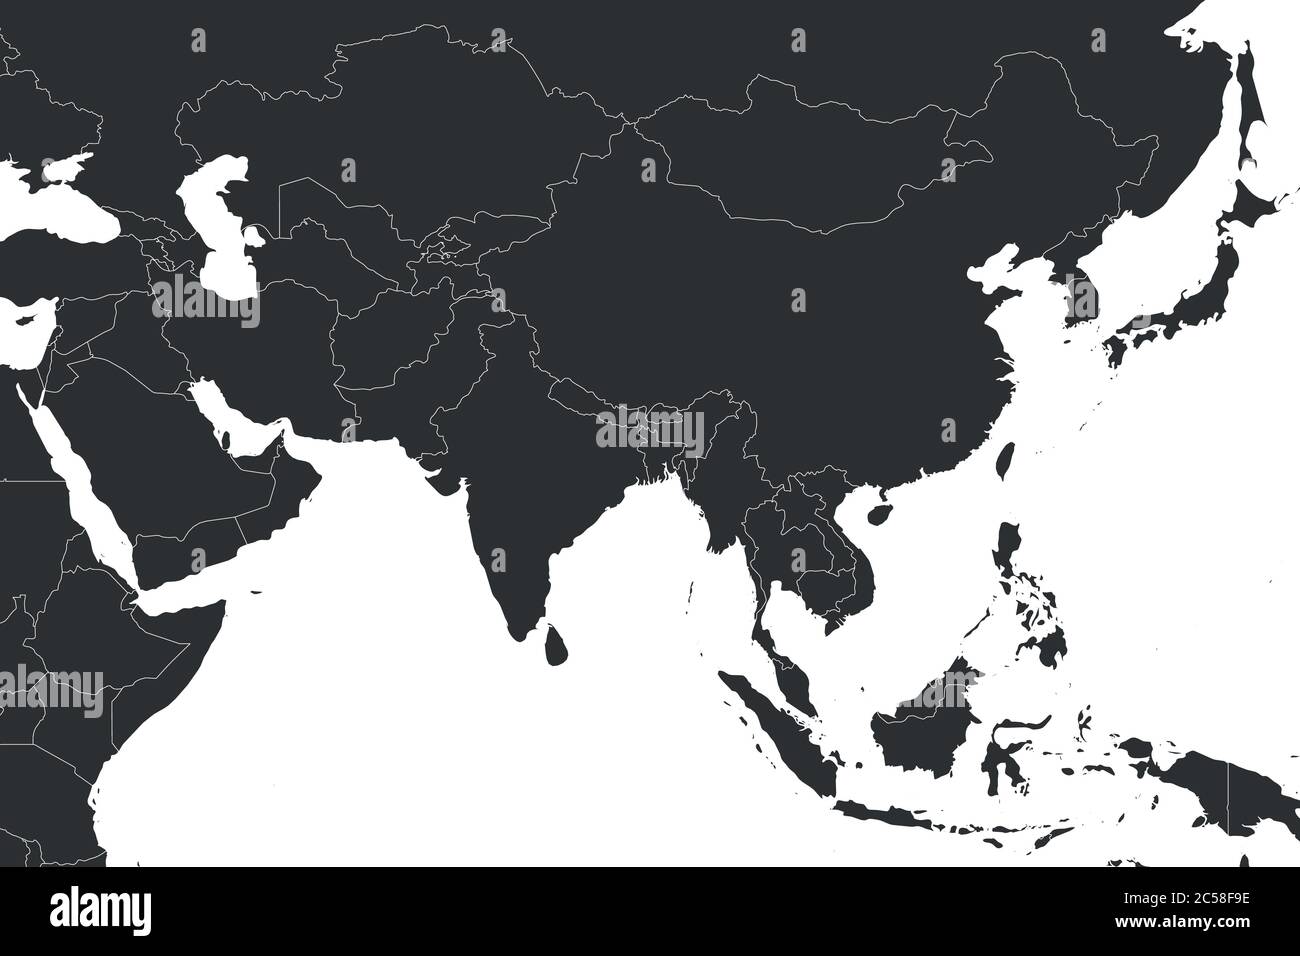 Carte politique vierge de l'Asie occidentale, méridionale et orientale en gris. Illustration simple à vecteur plat. Illustration de Vecteur